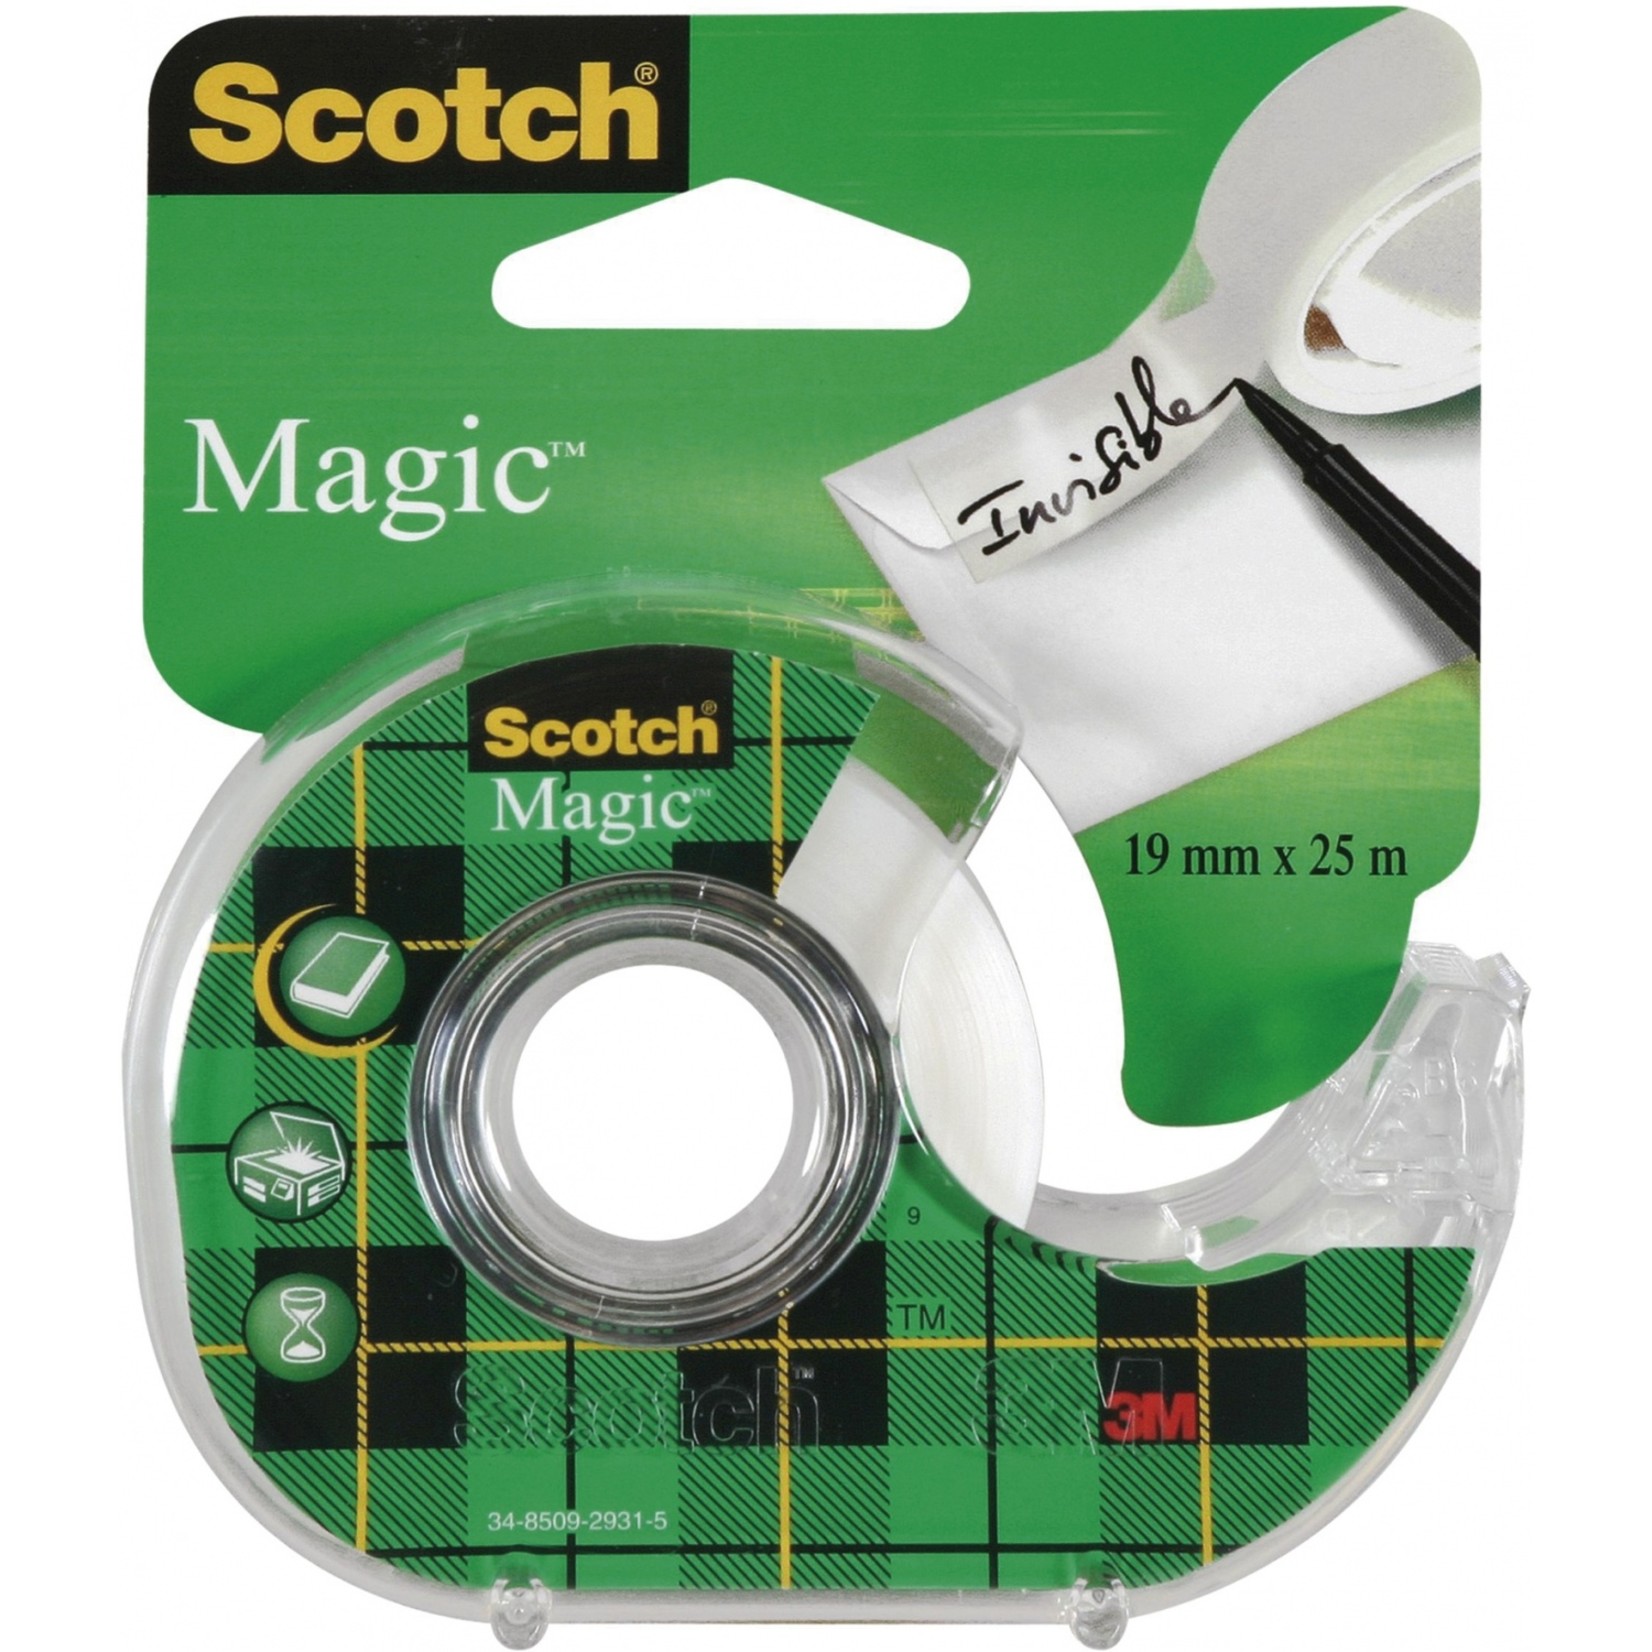 Scotch Magic Tape with Dispenser